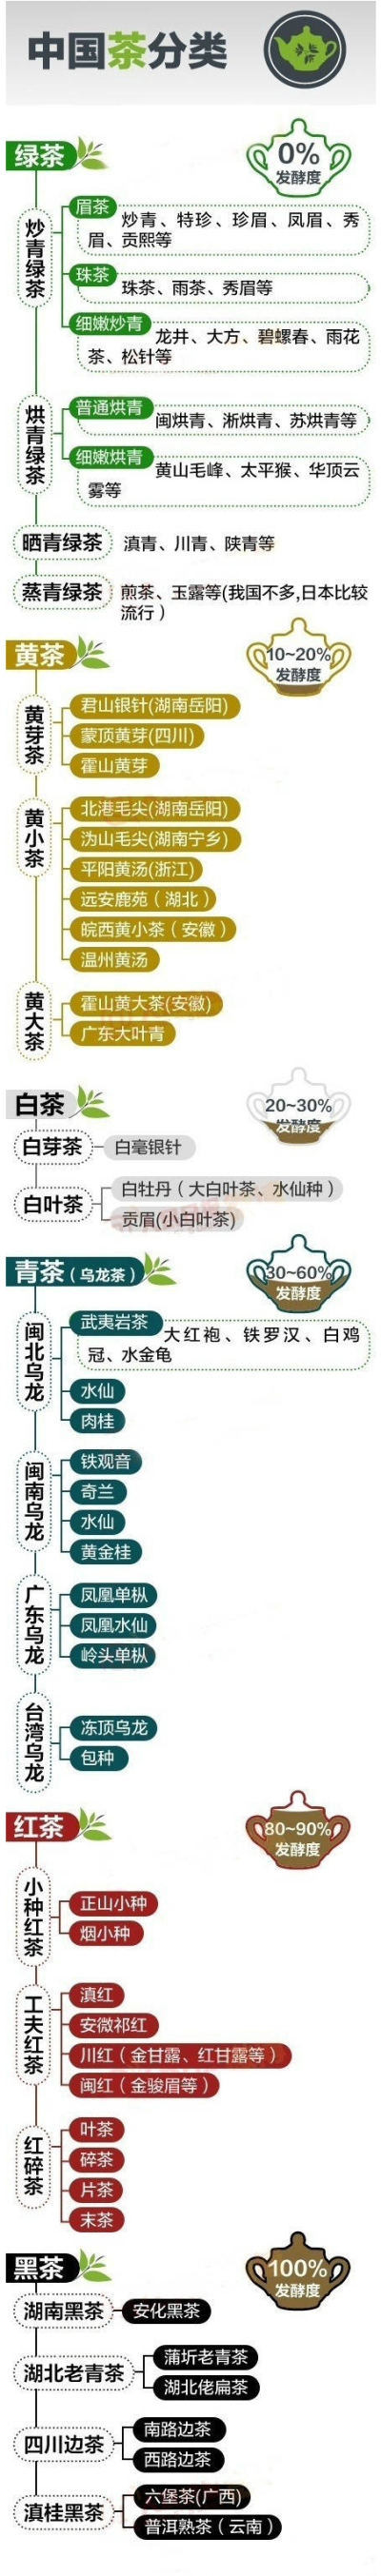 [一张图让你了解中国茶叶的分类 赶紧来涨#涨知识#！]中国的茶叶分类方式有很多种，比较常用的是根据发酵情况进行分类，即把茶叶分为发酵茶，半发酵茶和无发酵茶-说#图解#文-#趣味##百科##生活常识#-e板会:www.ebh.ne…